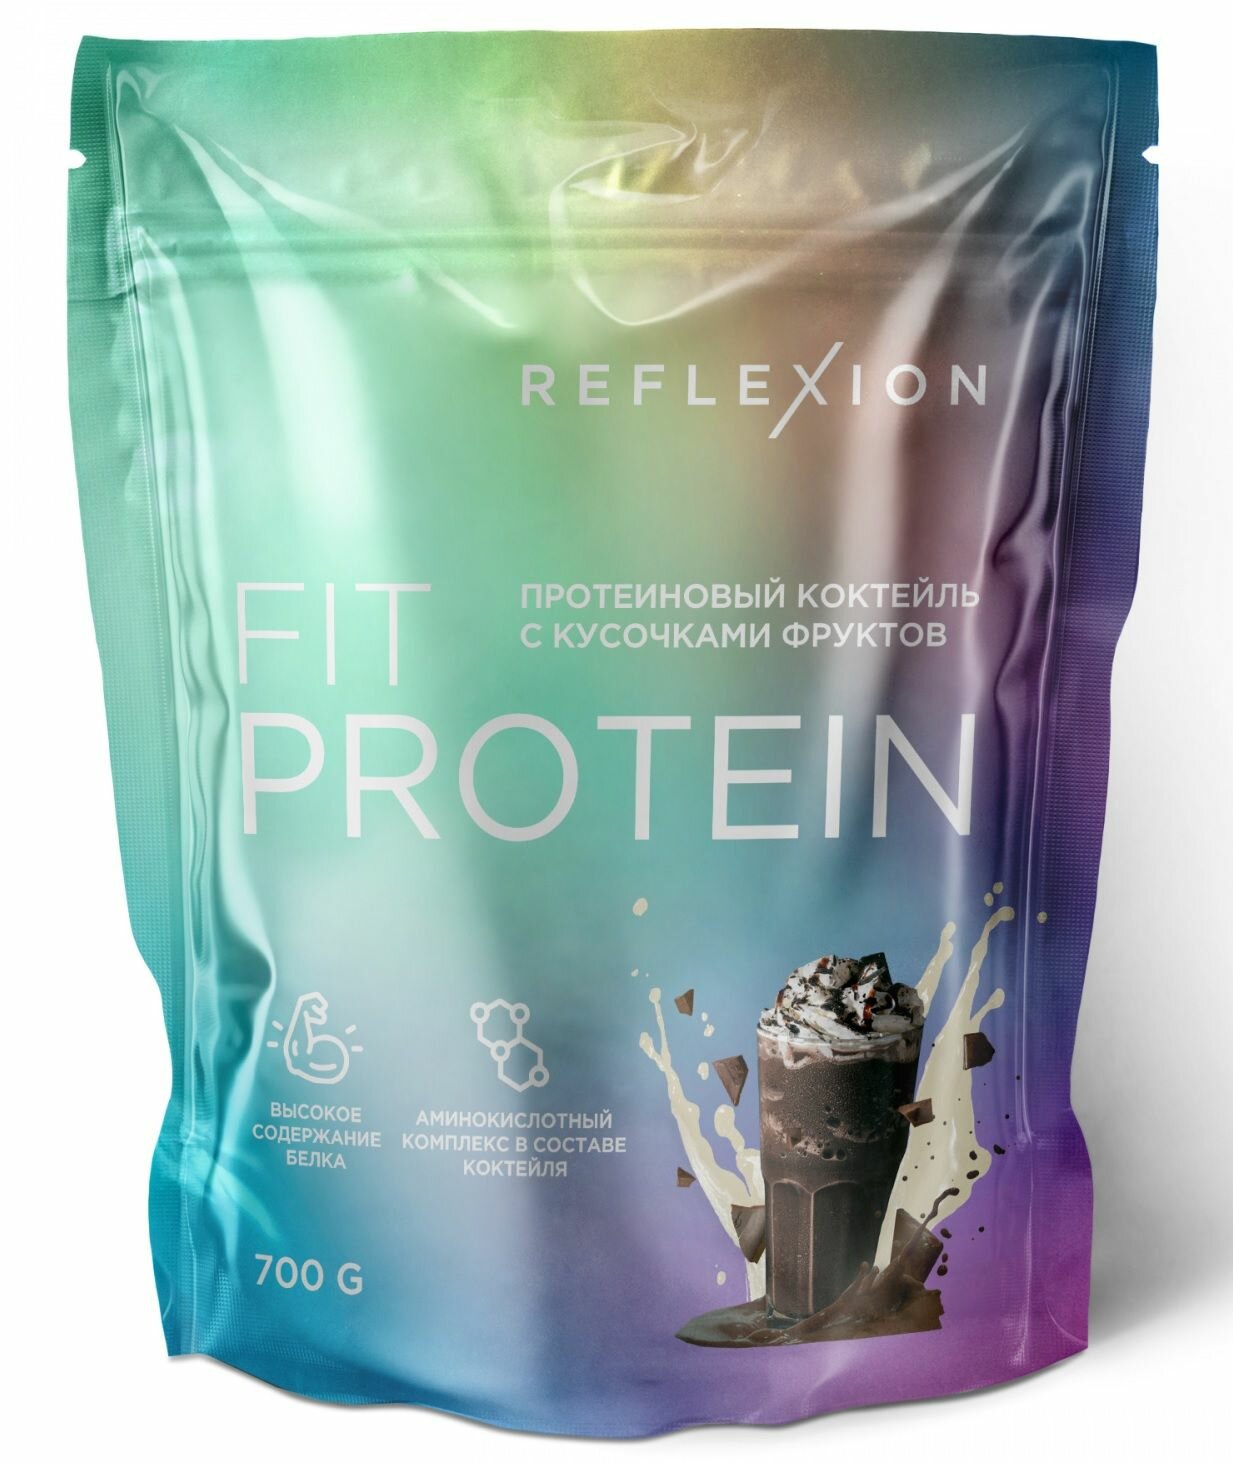 Протеин сывороточный 700 гр, белок 22 гр вкус шоколад (23 порции) Reflexion Fit Protein белковый коктейль, протеин для набора мышечной массы